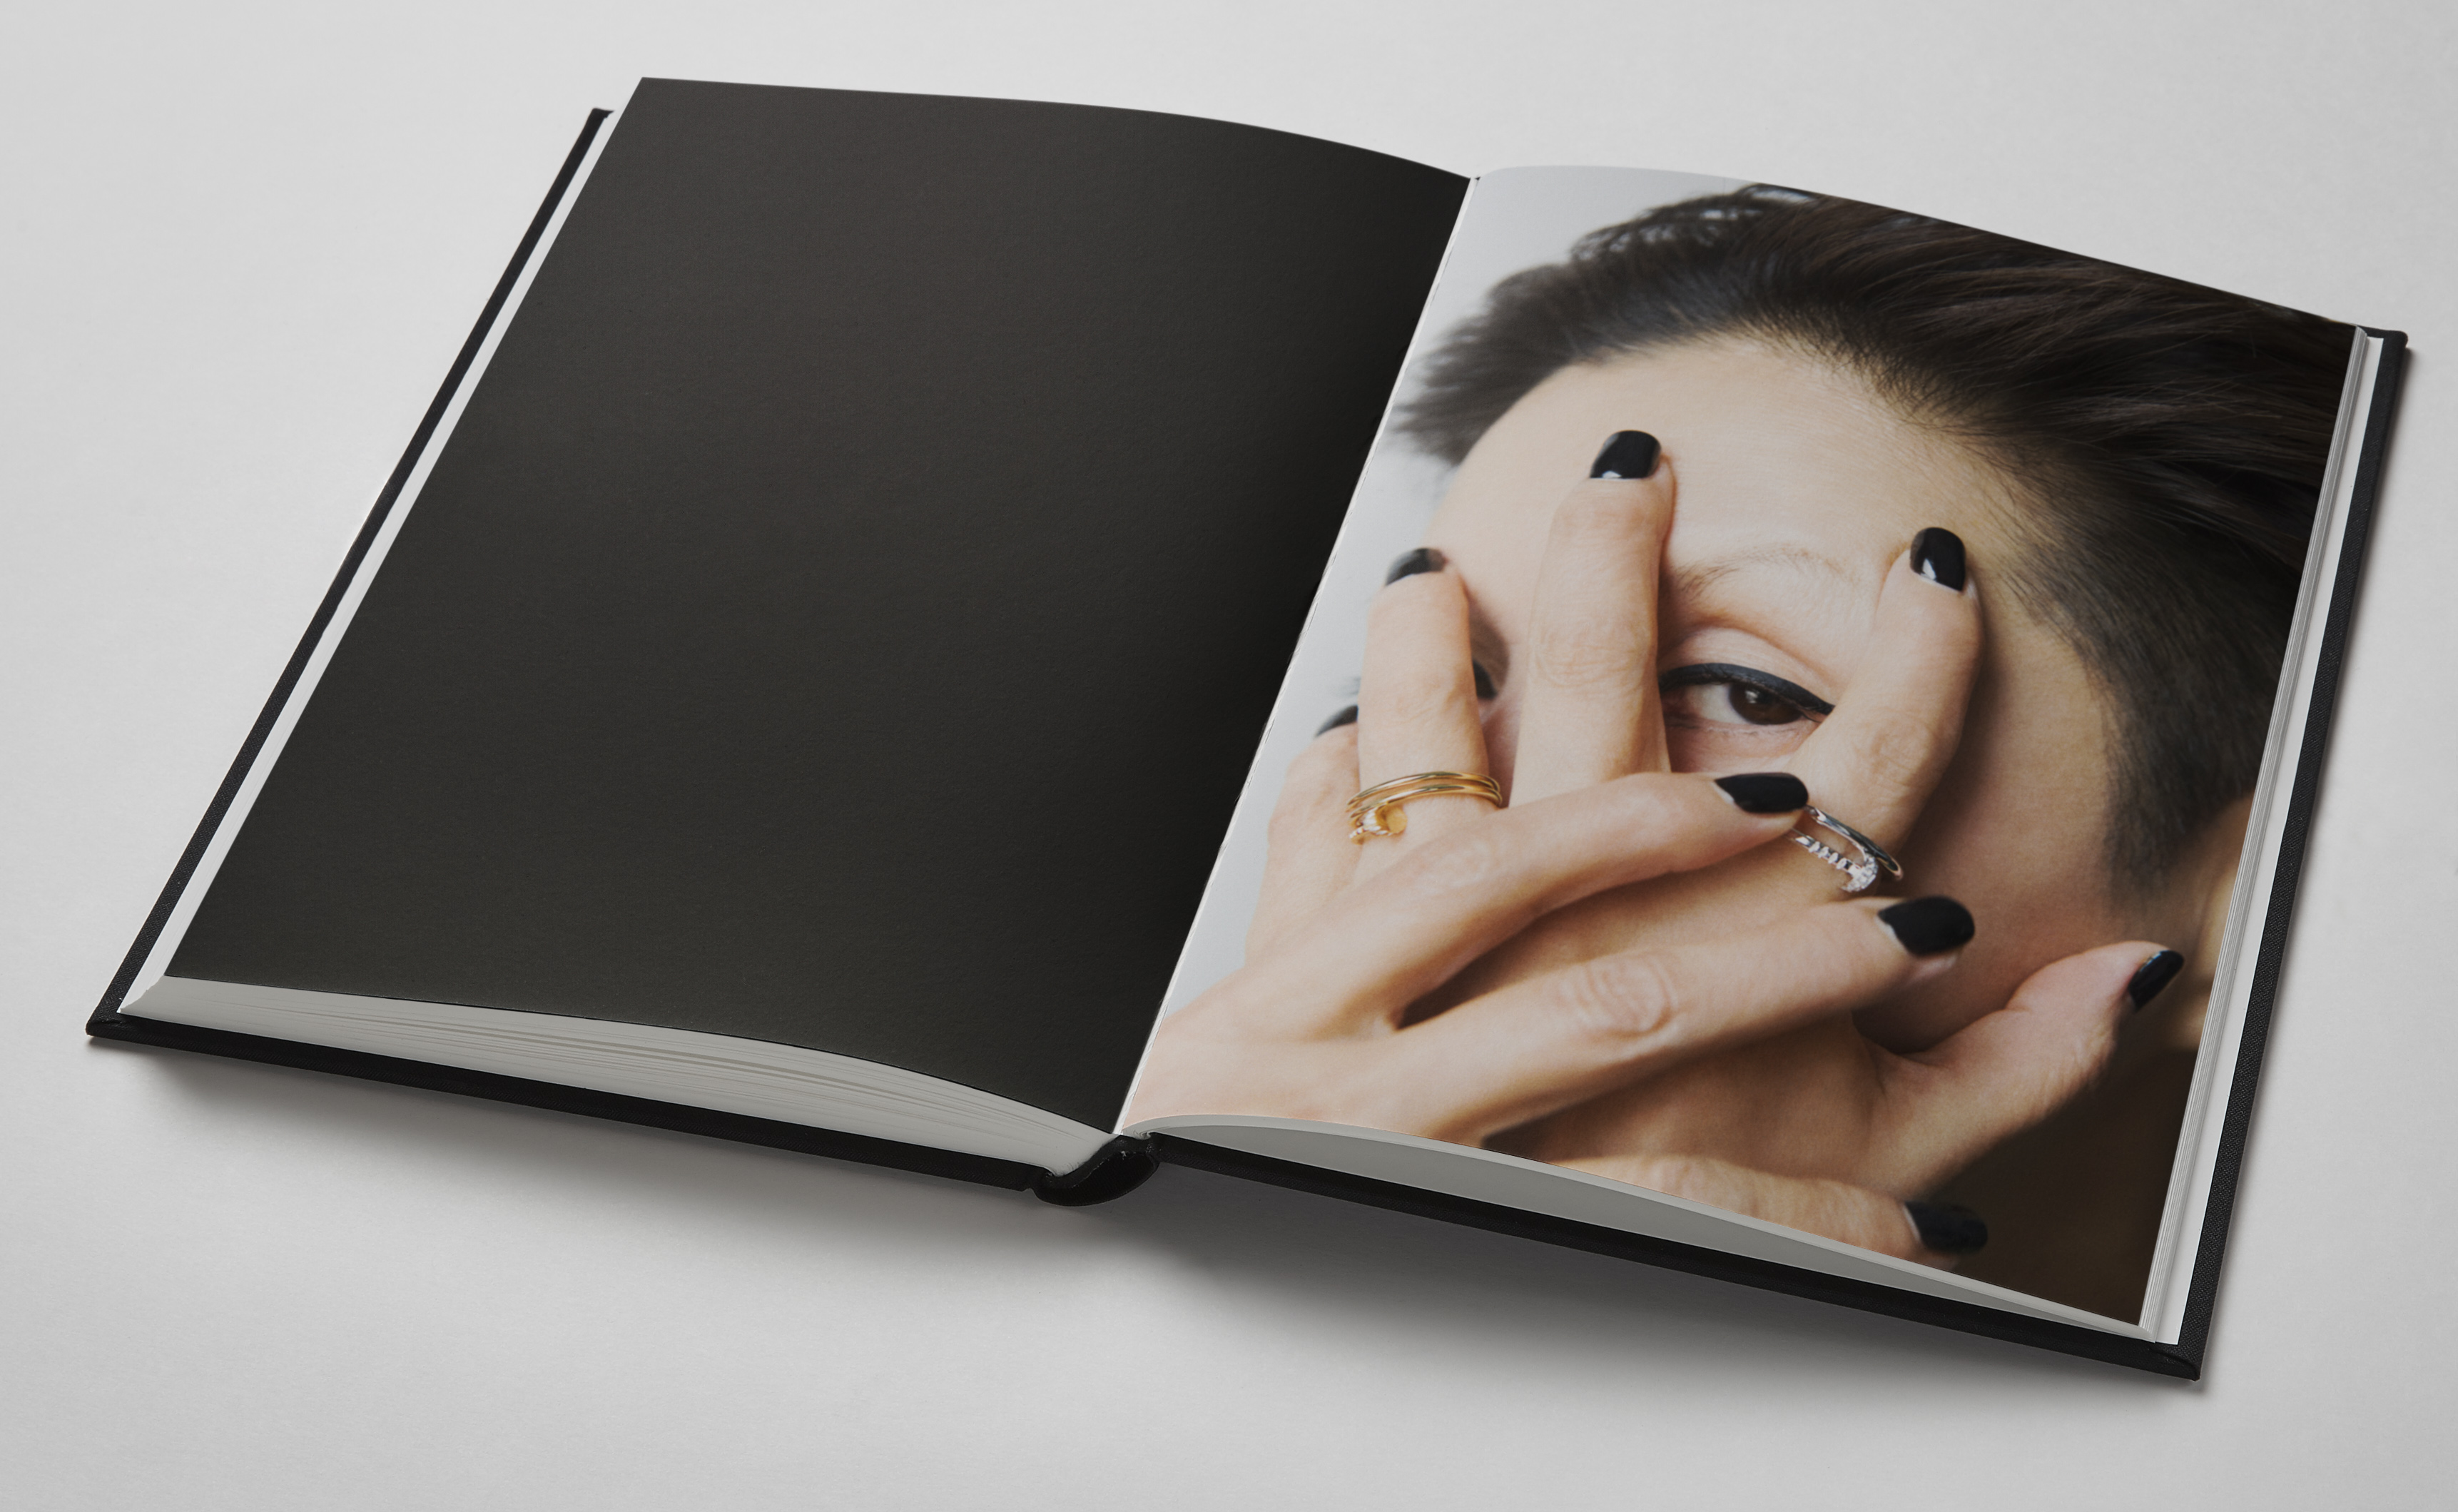 ライアン・マッギンレーが責任編集したカルティエのためのアートブック 『 ”With Nail u0026 I” edited by Ryan Mcginley  for Cartier_ Juste un Clou 』 - FNMNL (フェノメナル)